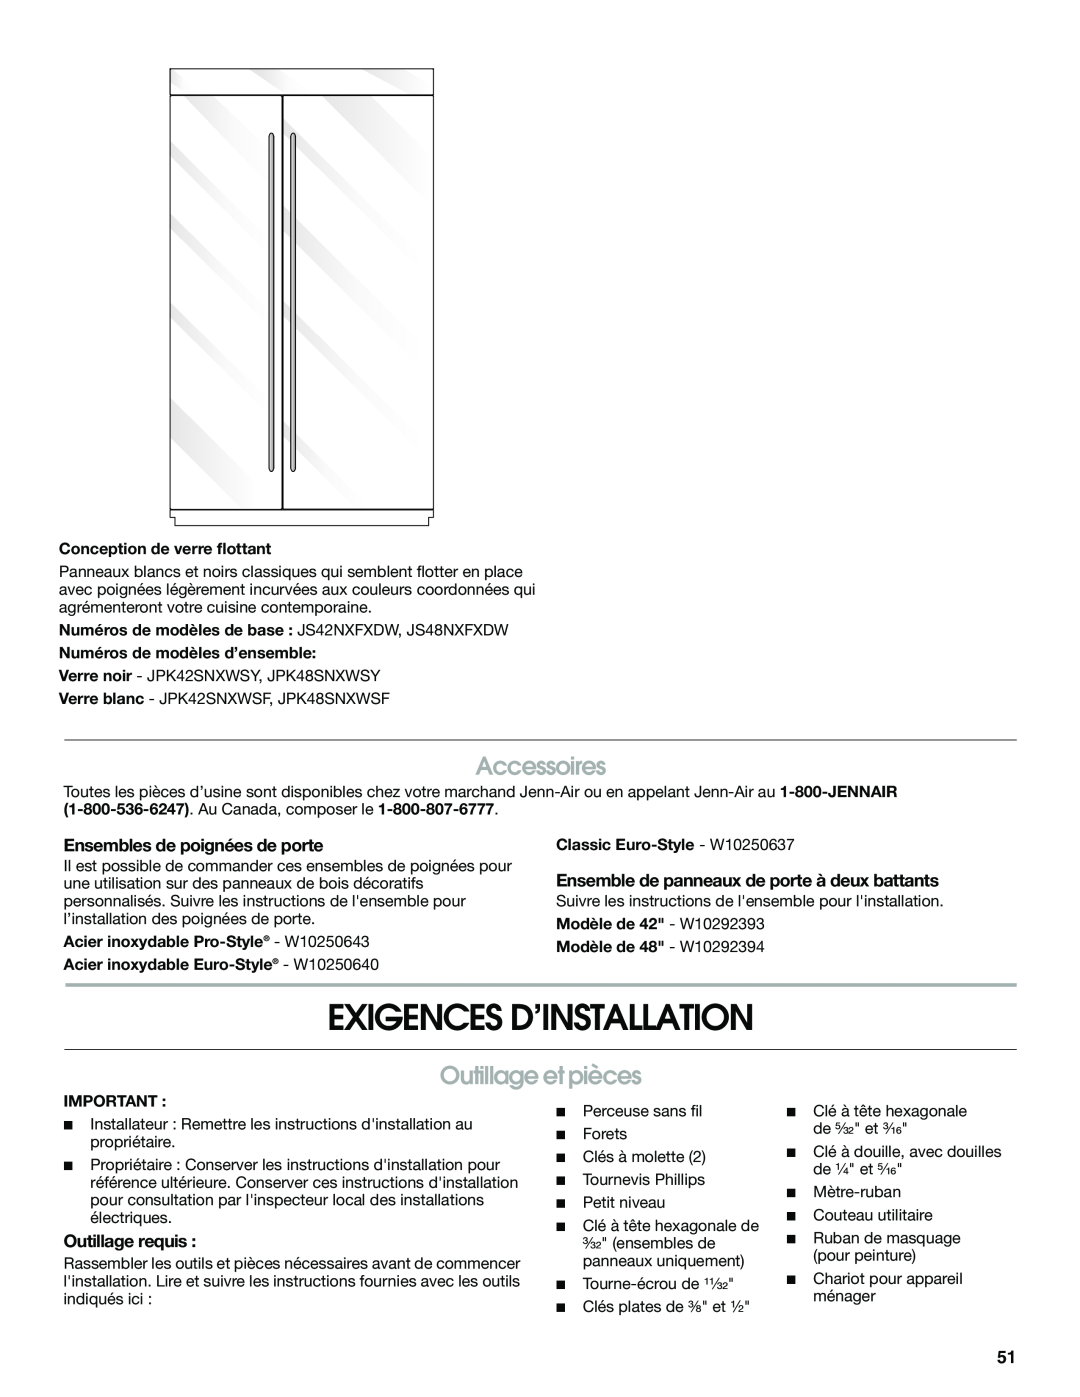 Jenn-Air W10379136B manual Exigences D’Installation, Accessoires, Outillage et pièces, Ensembles de poignées de porte 